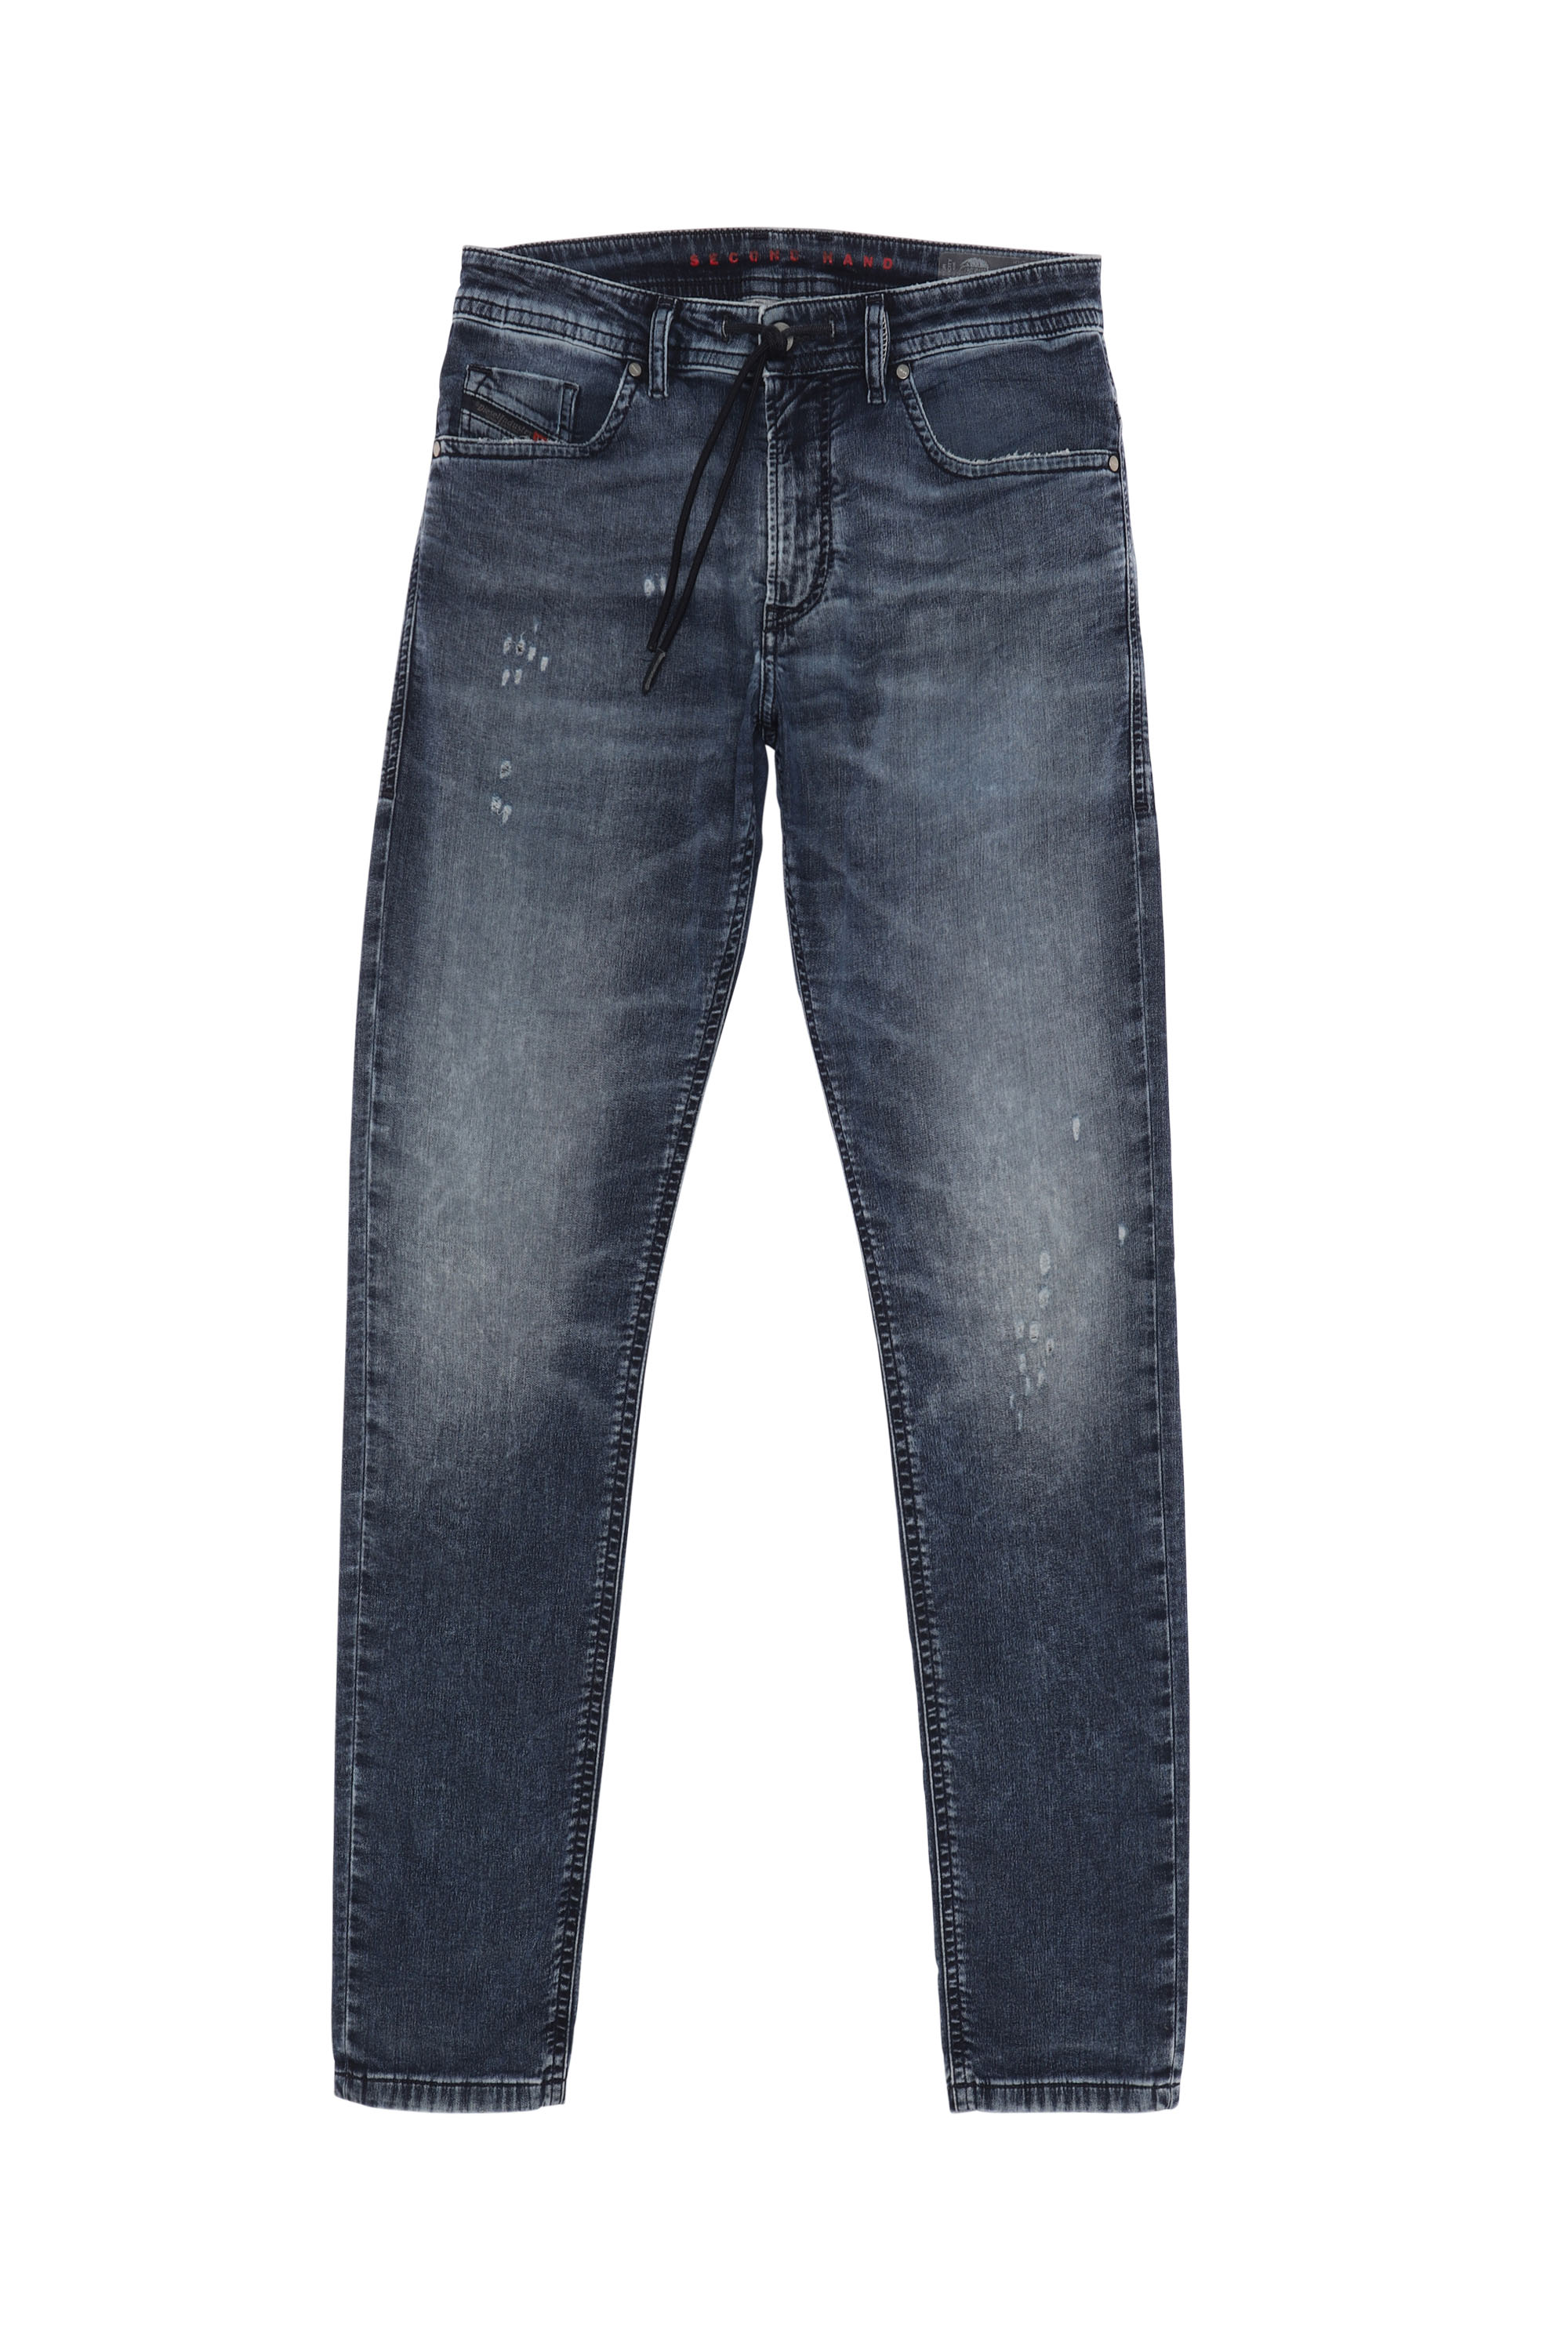 THOMMER CB JoggJeans®, Dunkelblau - Jeans